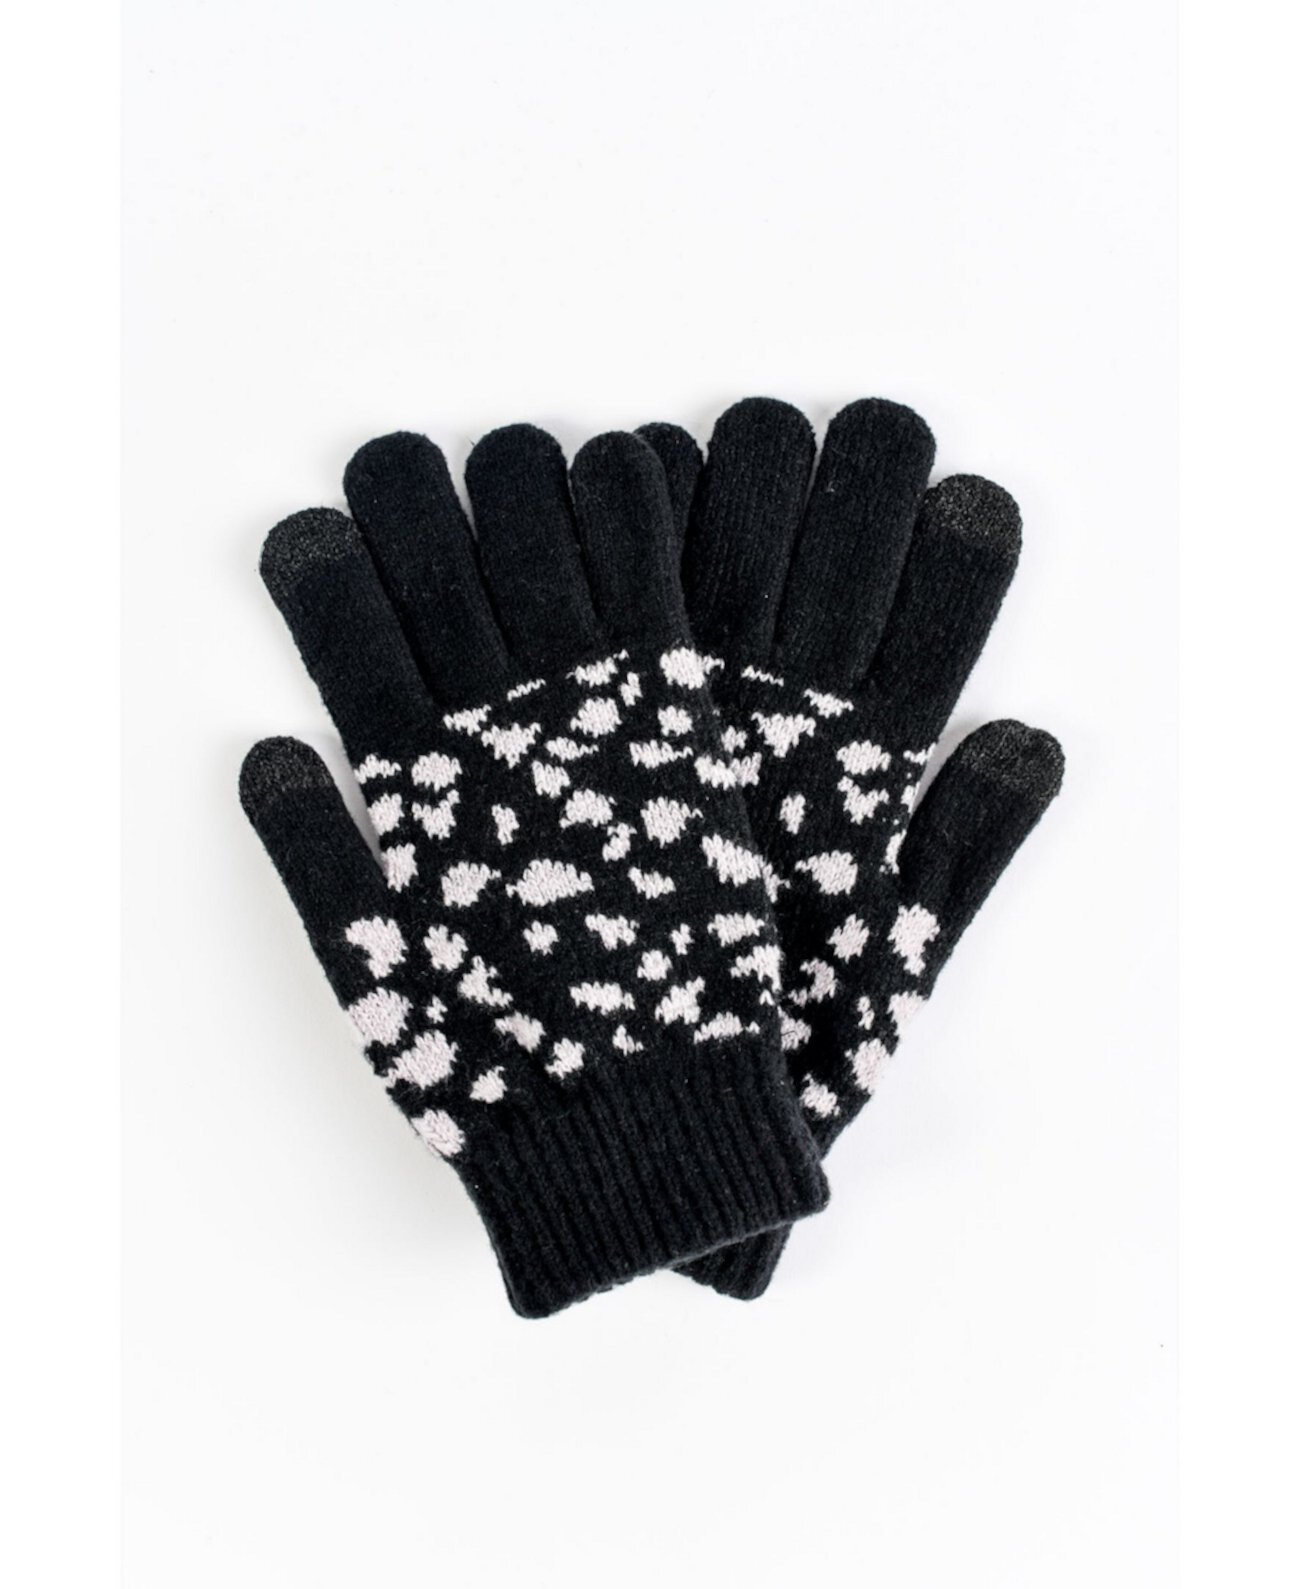 Вязаные перчатки с леопардовым принтом для сенсорного экрана и уютной подкладкой Marcus Adler